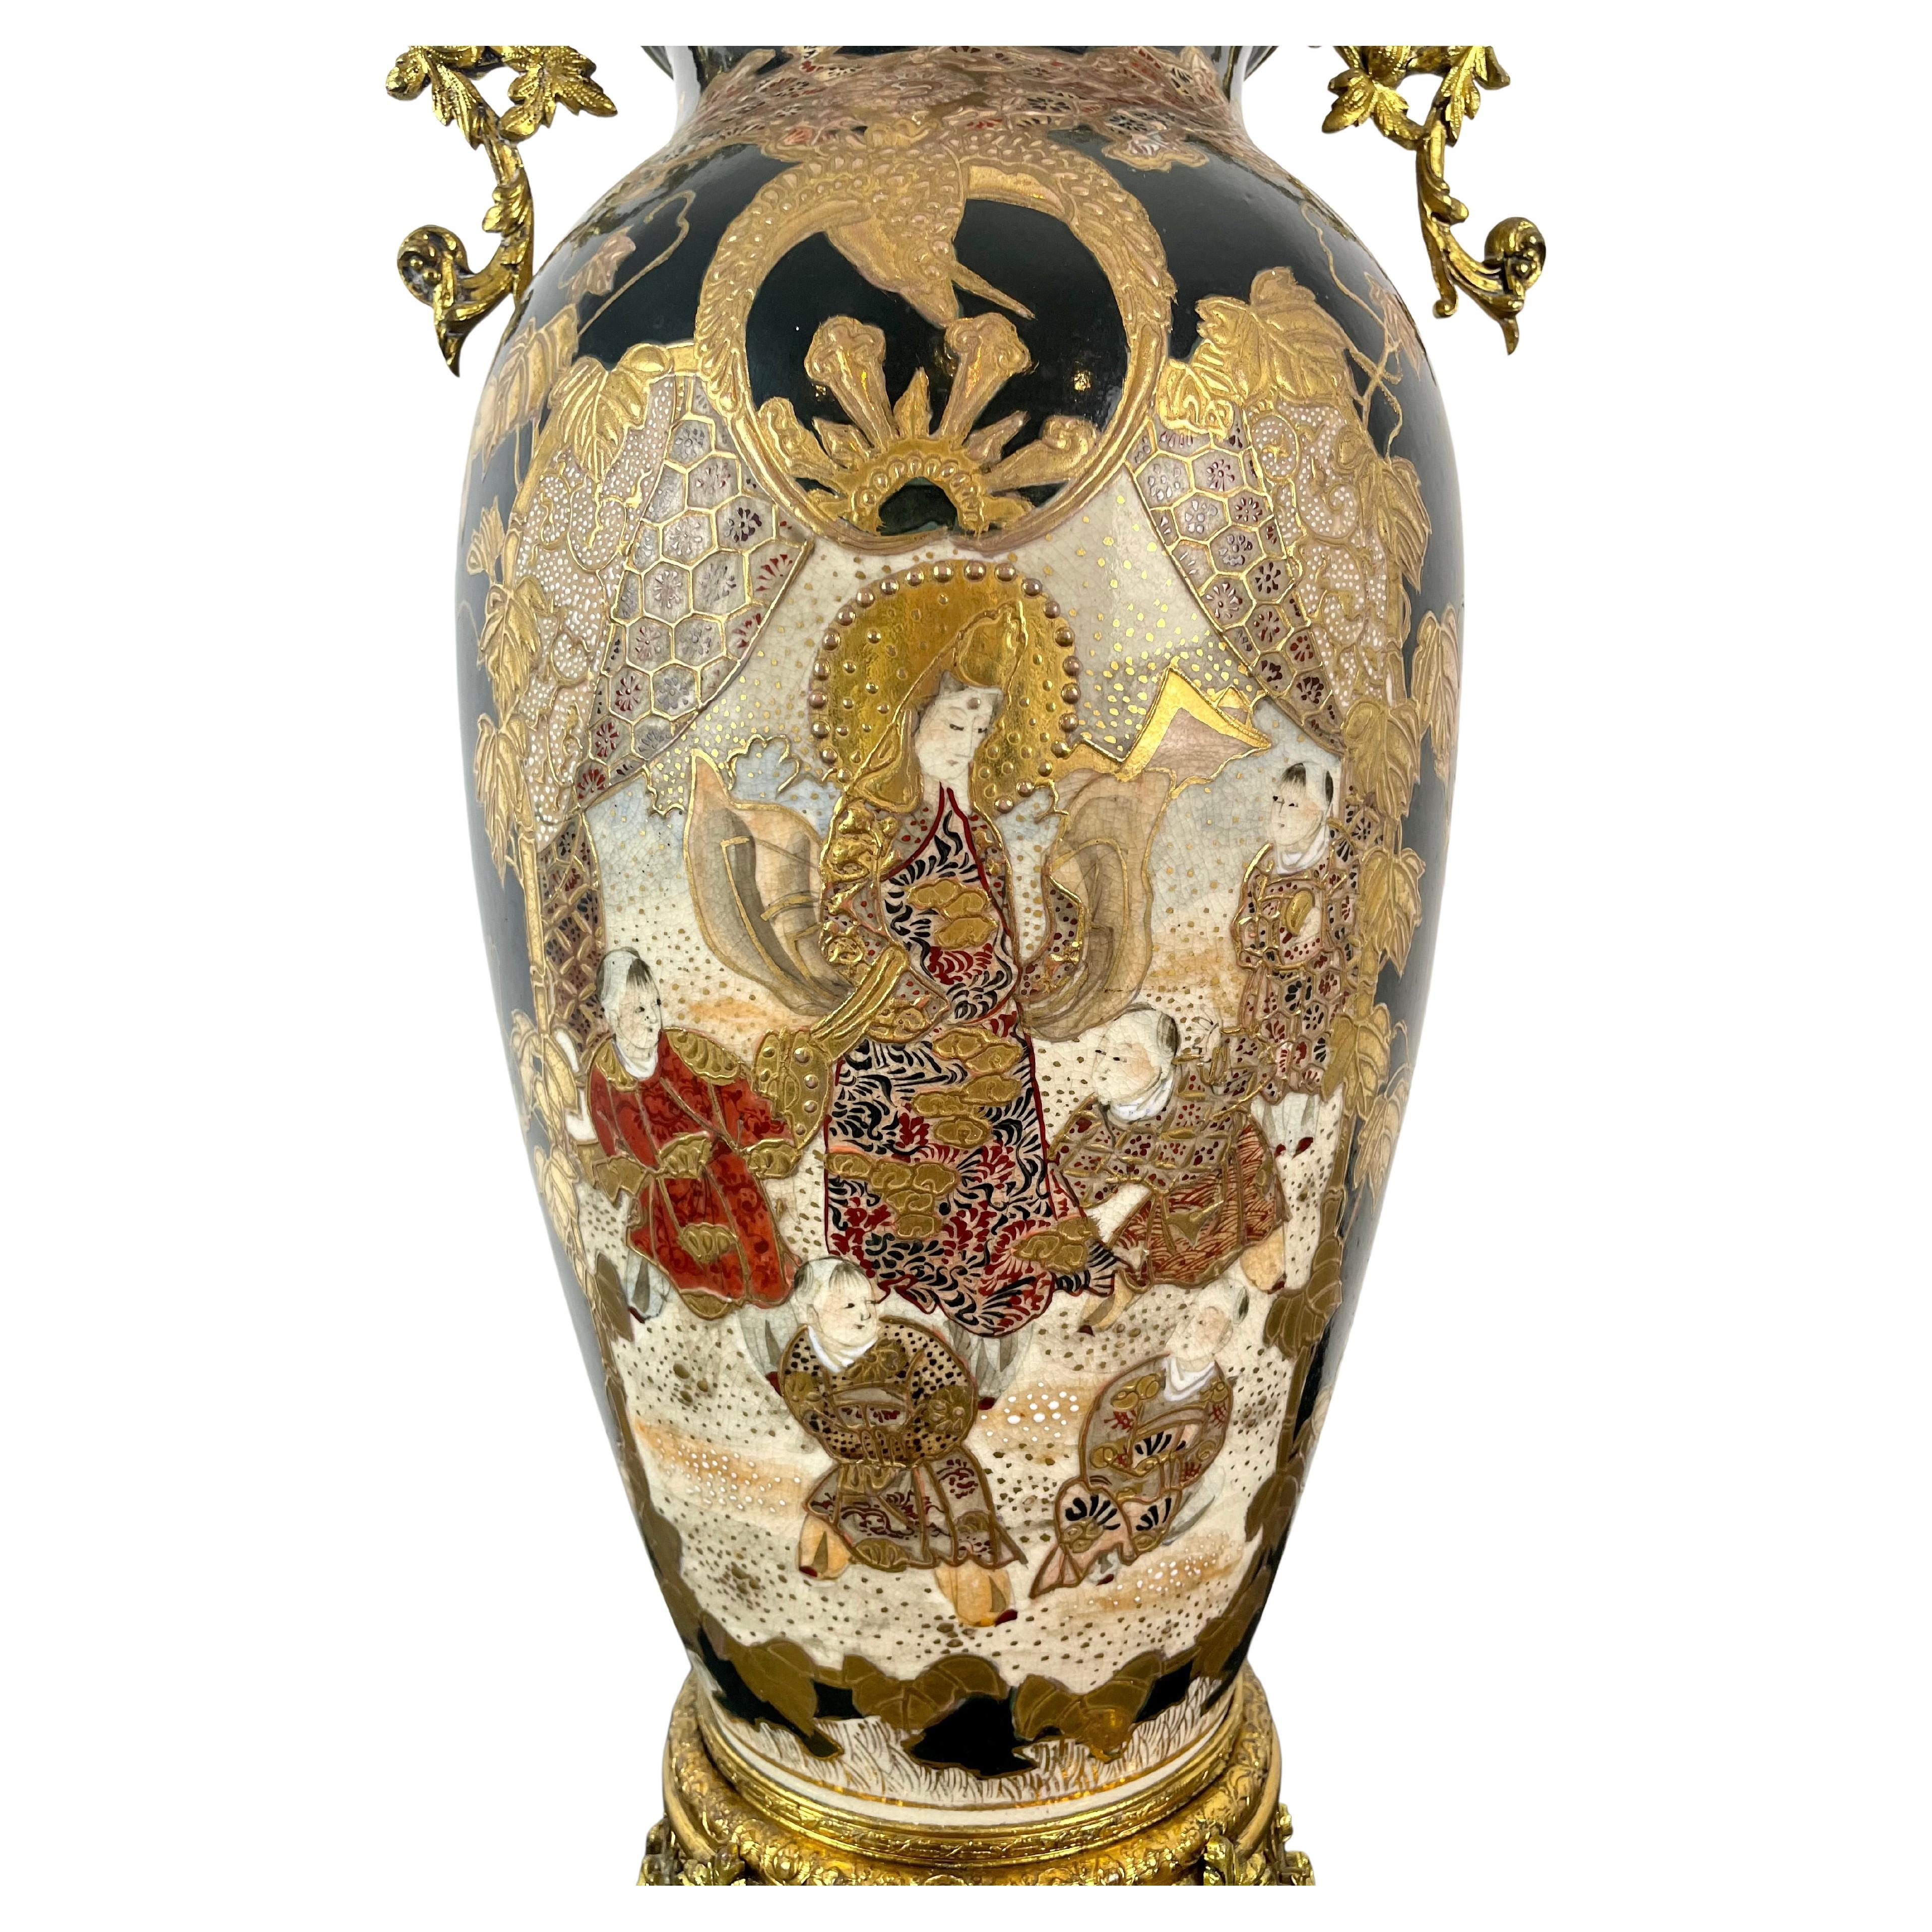 Grand vase en porcelaine de Satsuma de l'époque Meiji sur une monture en métal doré de l'époque Napoléon III. Sur l'une des faces du vase est représentée une divinité, probablement Amaterasu, avec des enfants jouant à ses pieds, reconnaissable à son